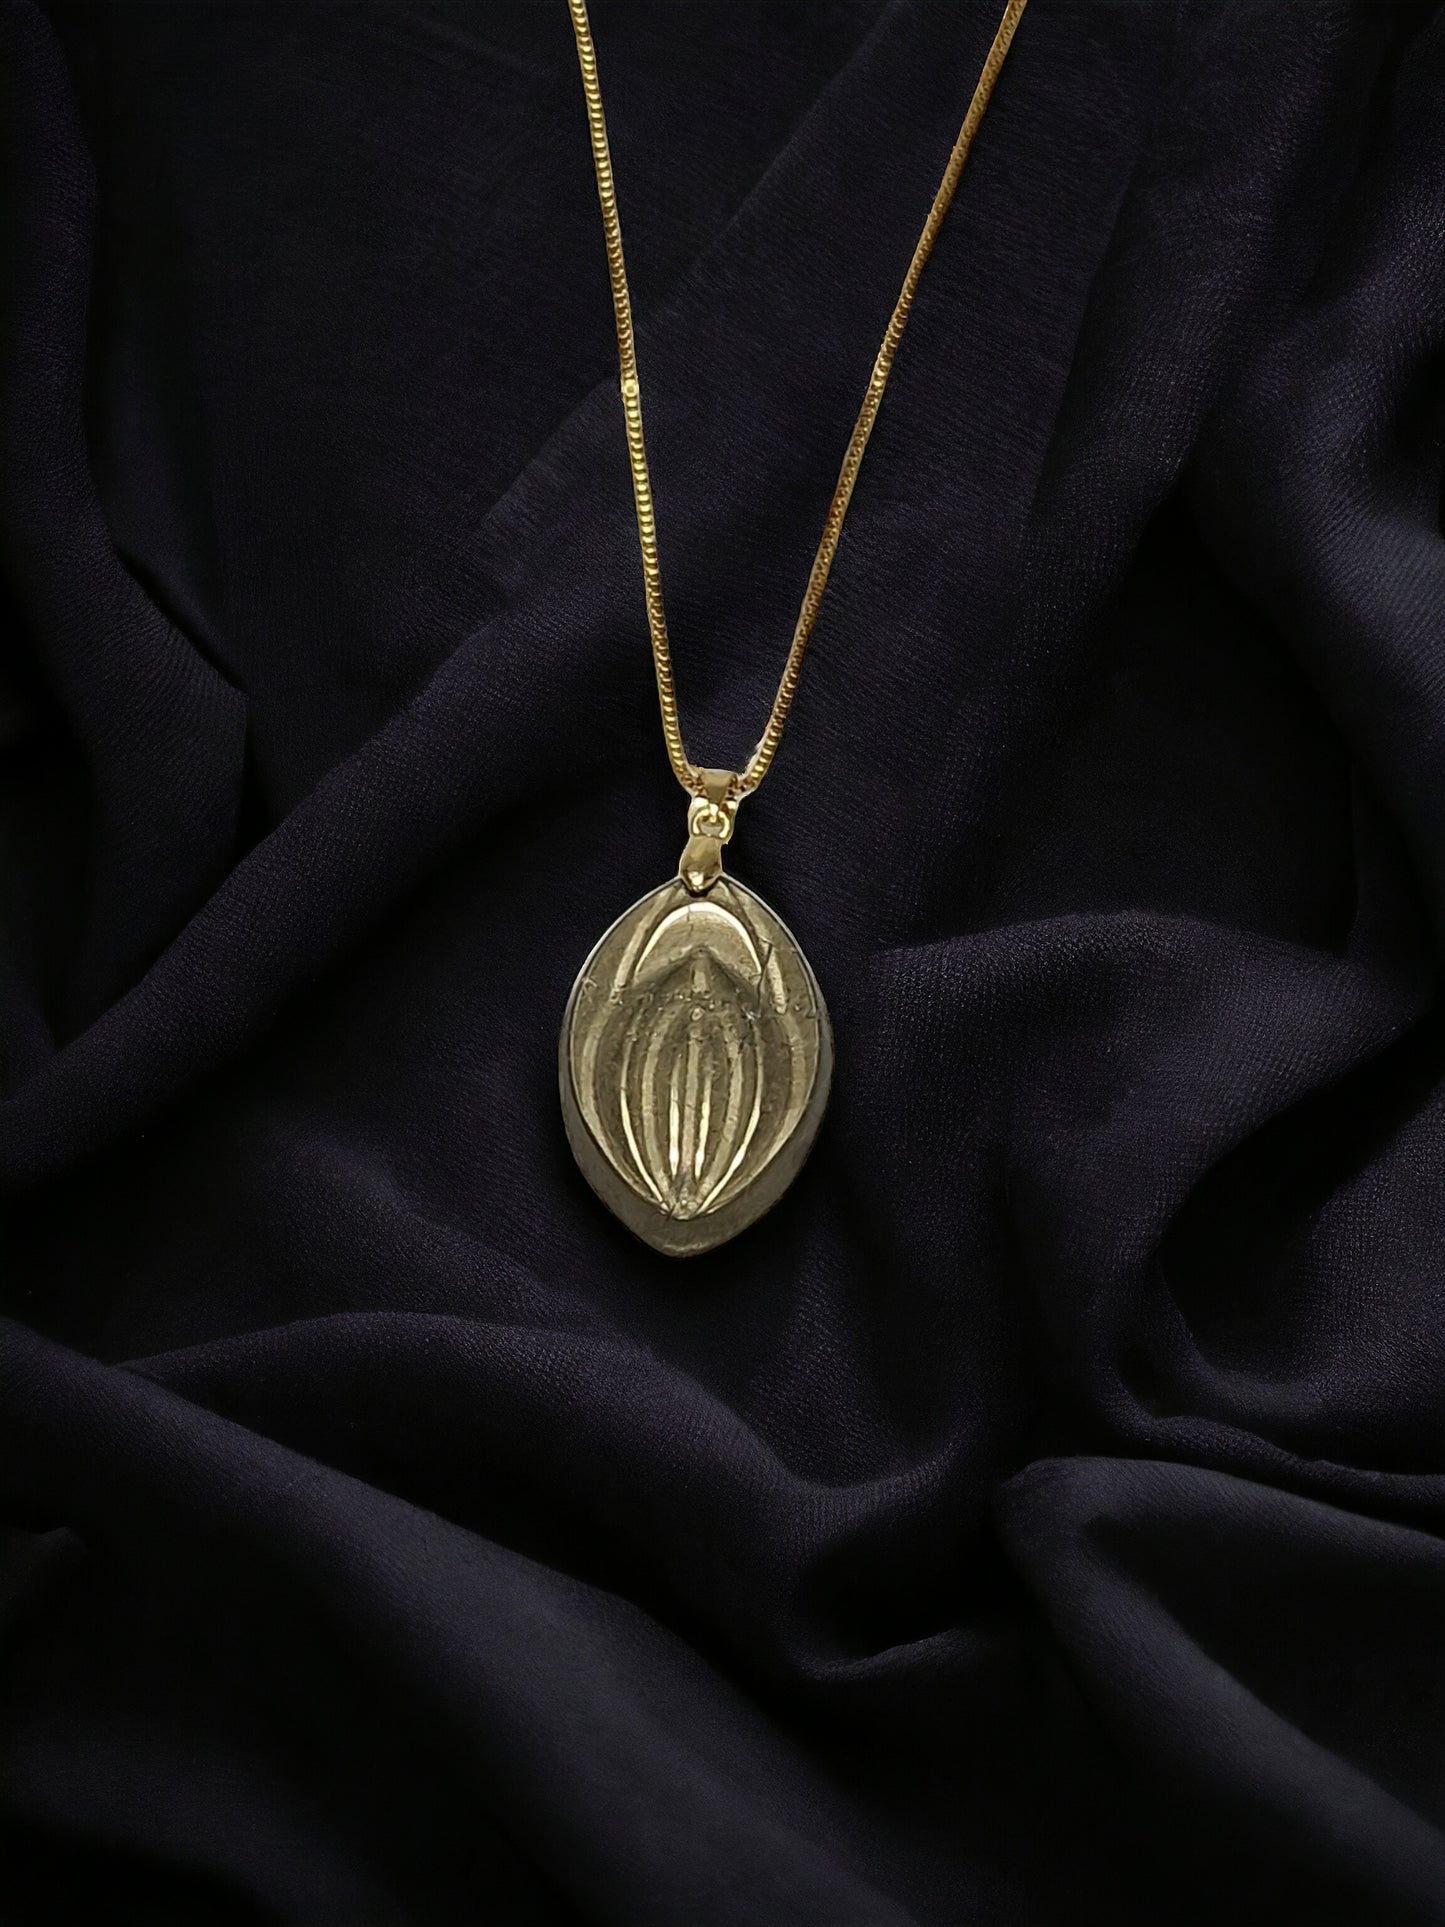 Ett vackert halsband med en kristall av stenen pyrit, formad som en vagina eller fiffi